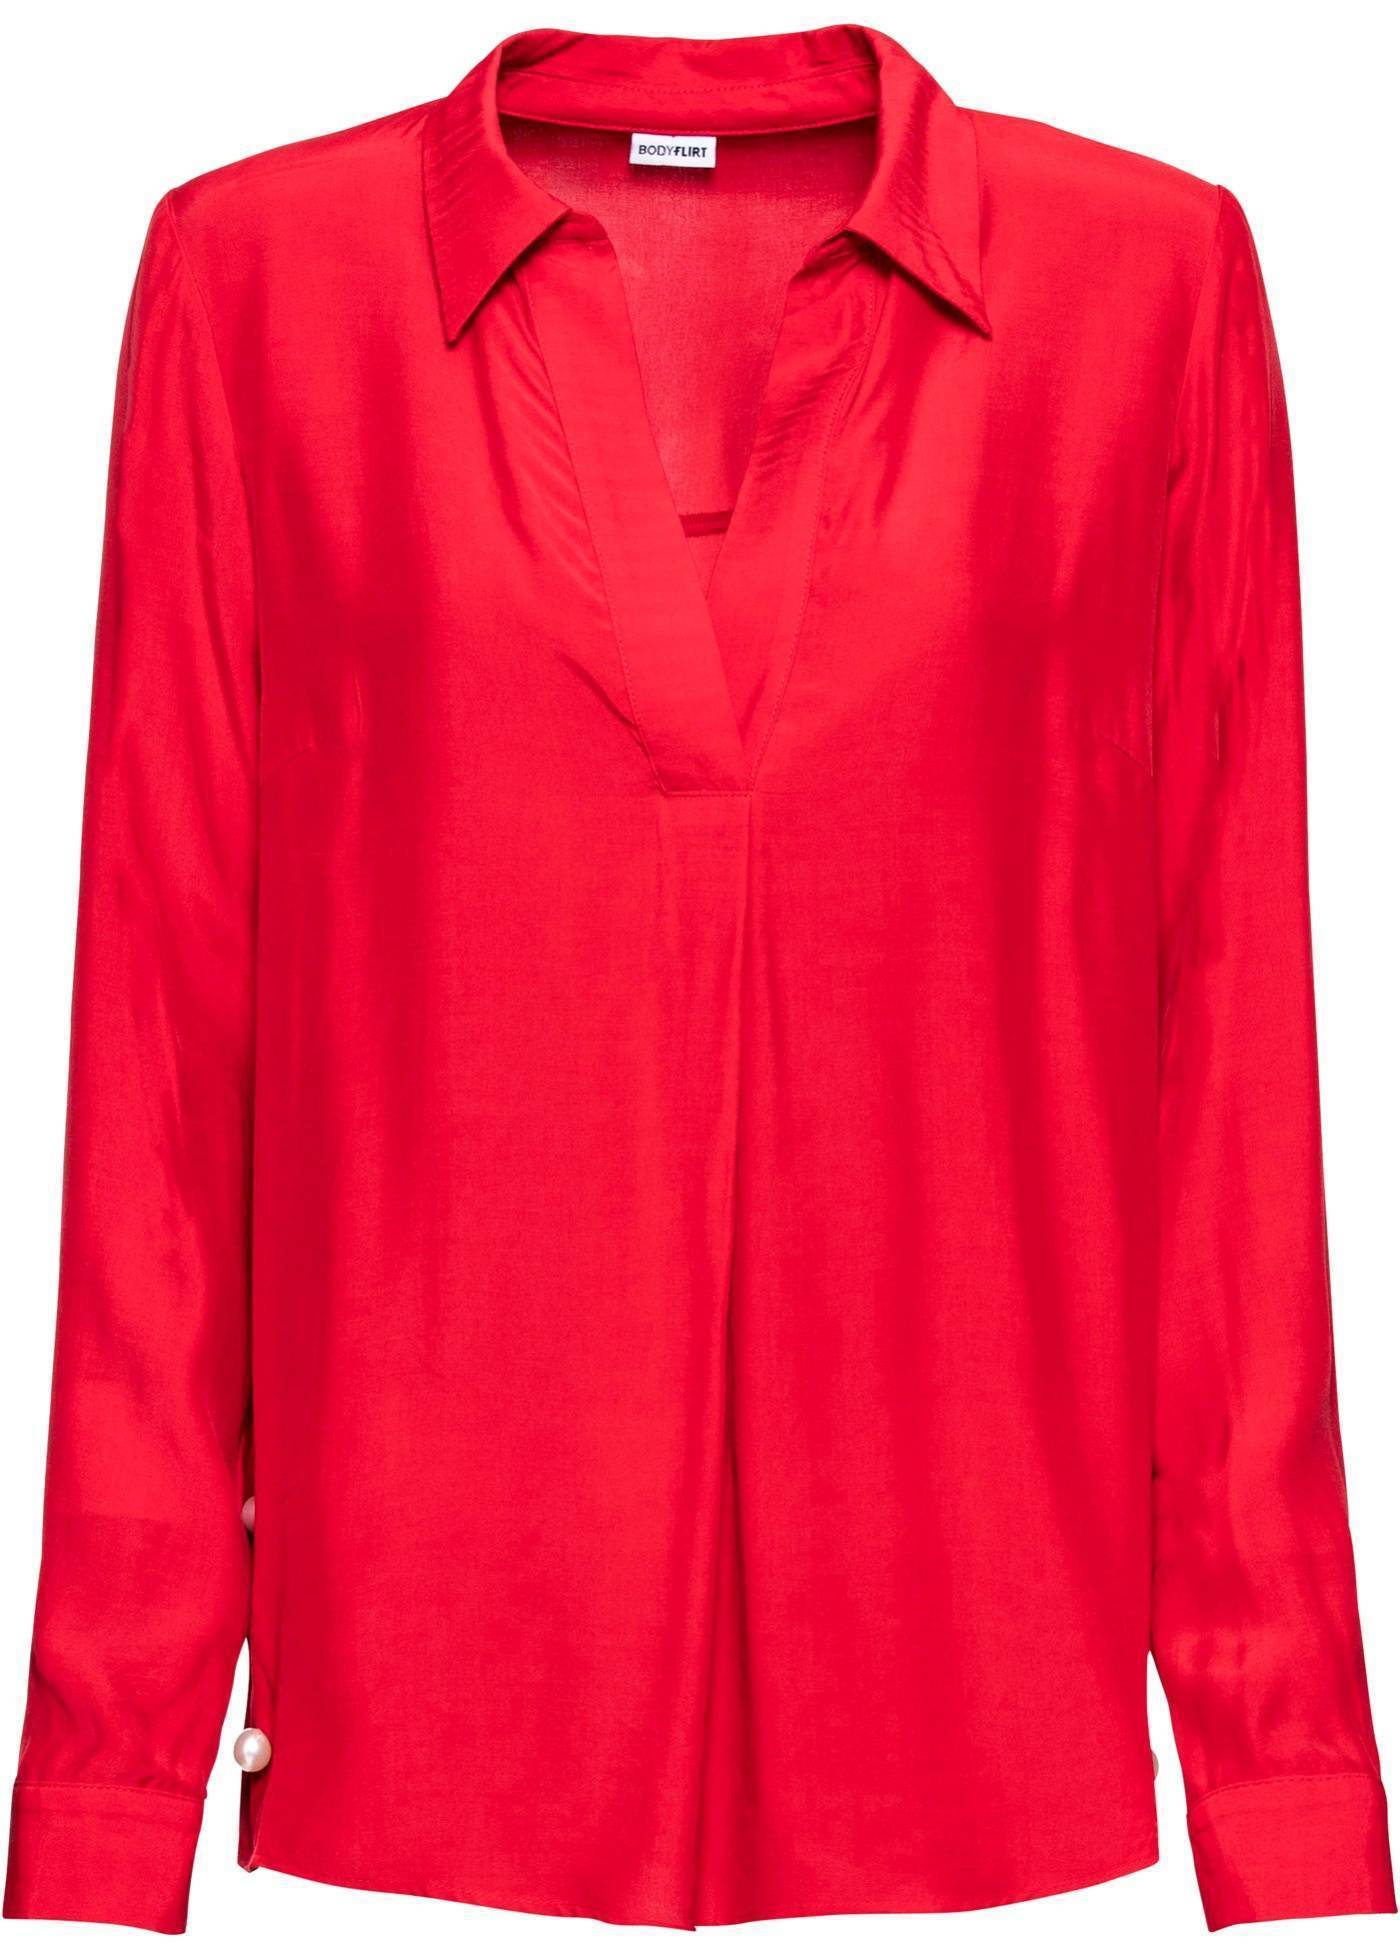 Красные блузки женская. Бонприкс блузки женские. Красная блуза. Блуза женская красная. Красная кофта женская.